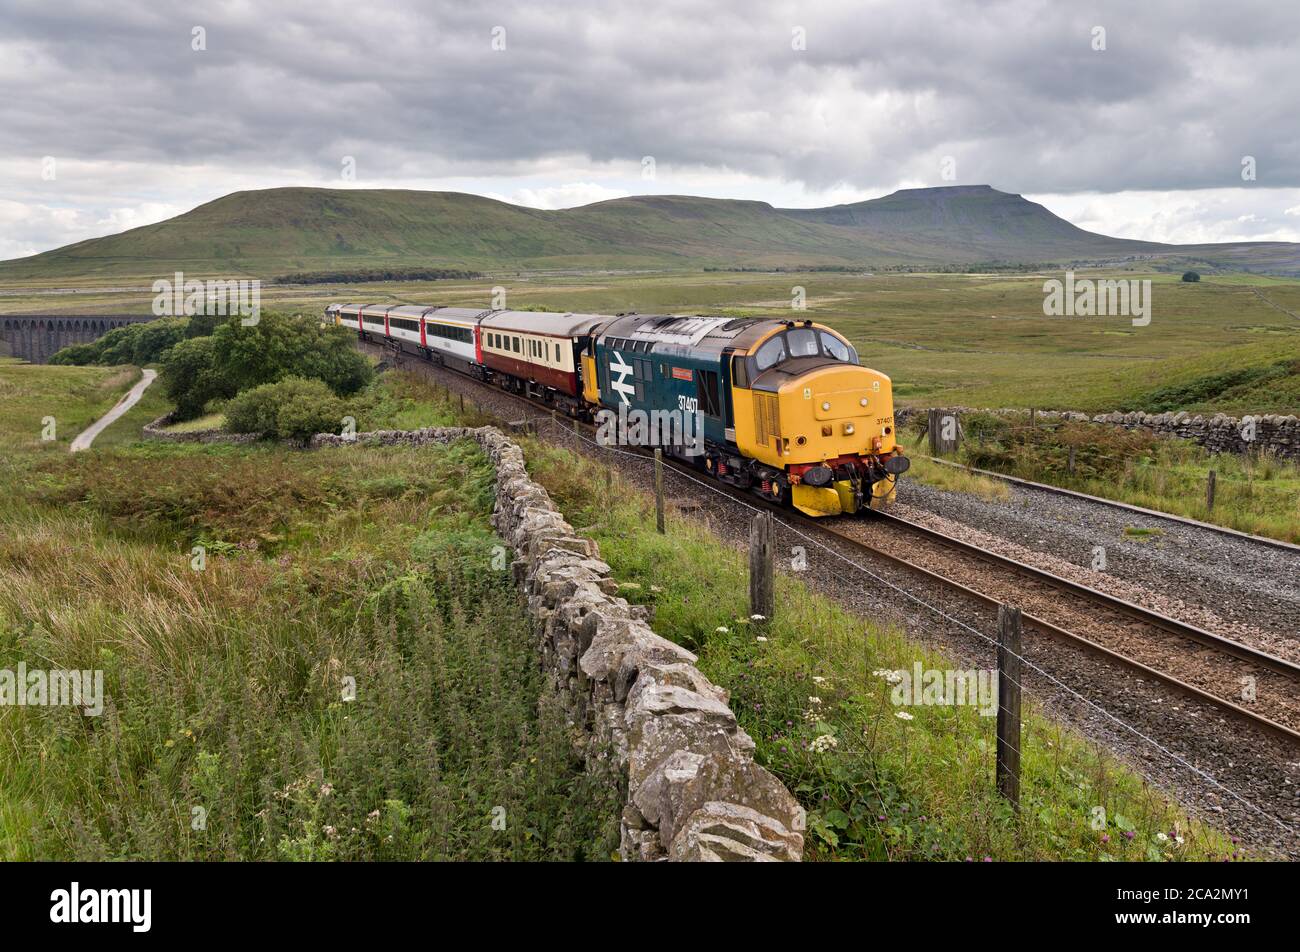 Treno speciale estivo 'The Staycation Express' sulla ferrovia Settle-Carlisle, visto qui a Blea Moor, Ribblehead, Yorkshire Dales National Park, Regno Unito Foto Stock